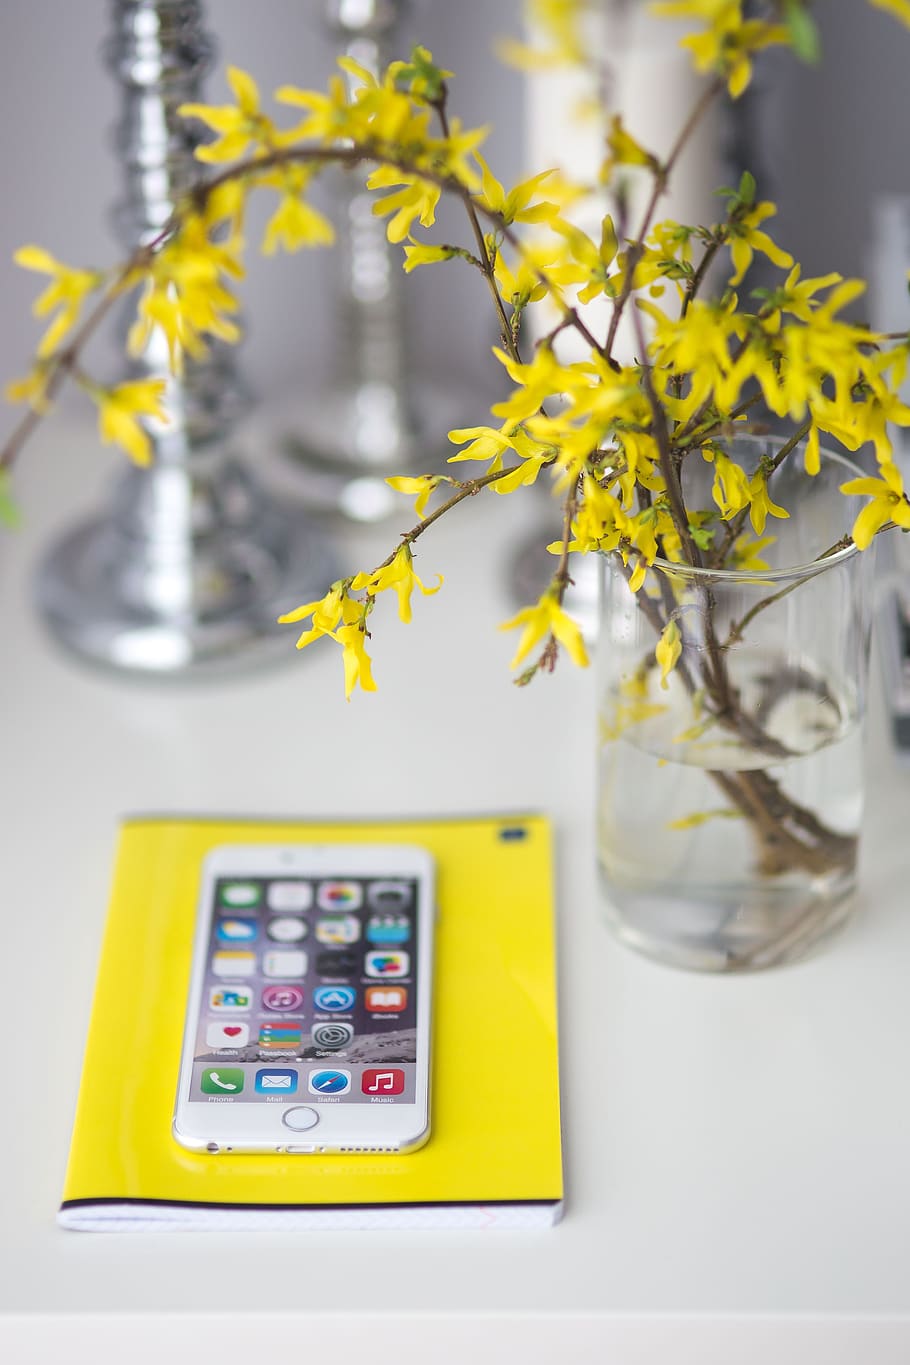 flores, amarillo, cuaderno, teléfono inteligente, teléfono móvil, teléfono celular, bloc de notas, blanco, flor, planta